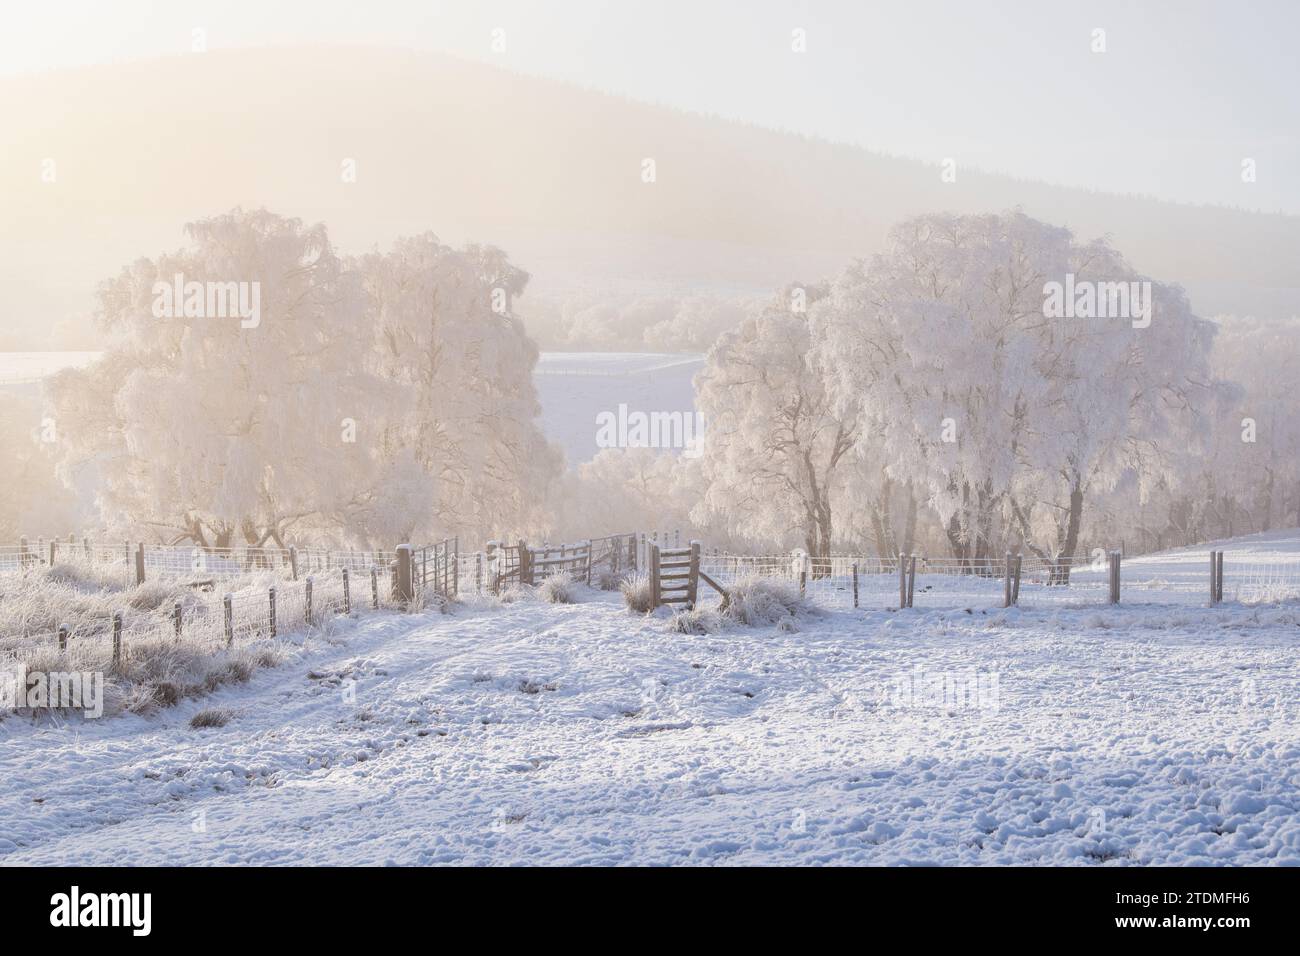 Neige de décembre, brume et gelée de canular sur les bouleaux argentés dans la campagne de la Moray. Morayshire, Écosse Banque D'Images